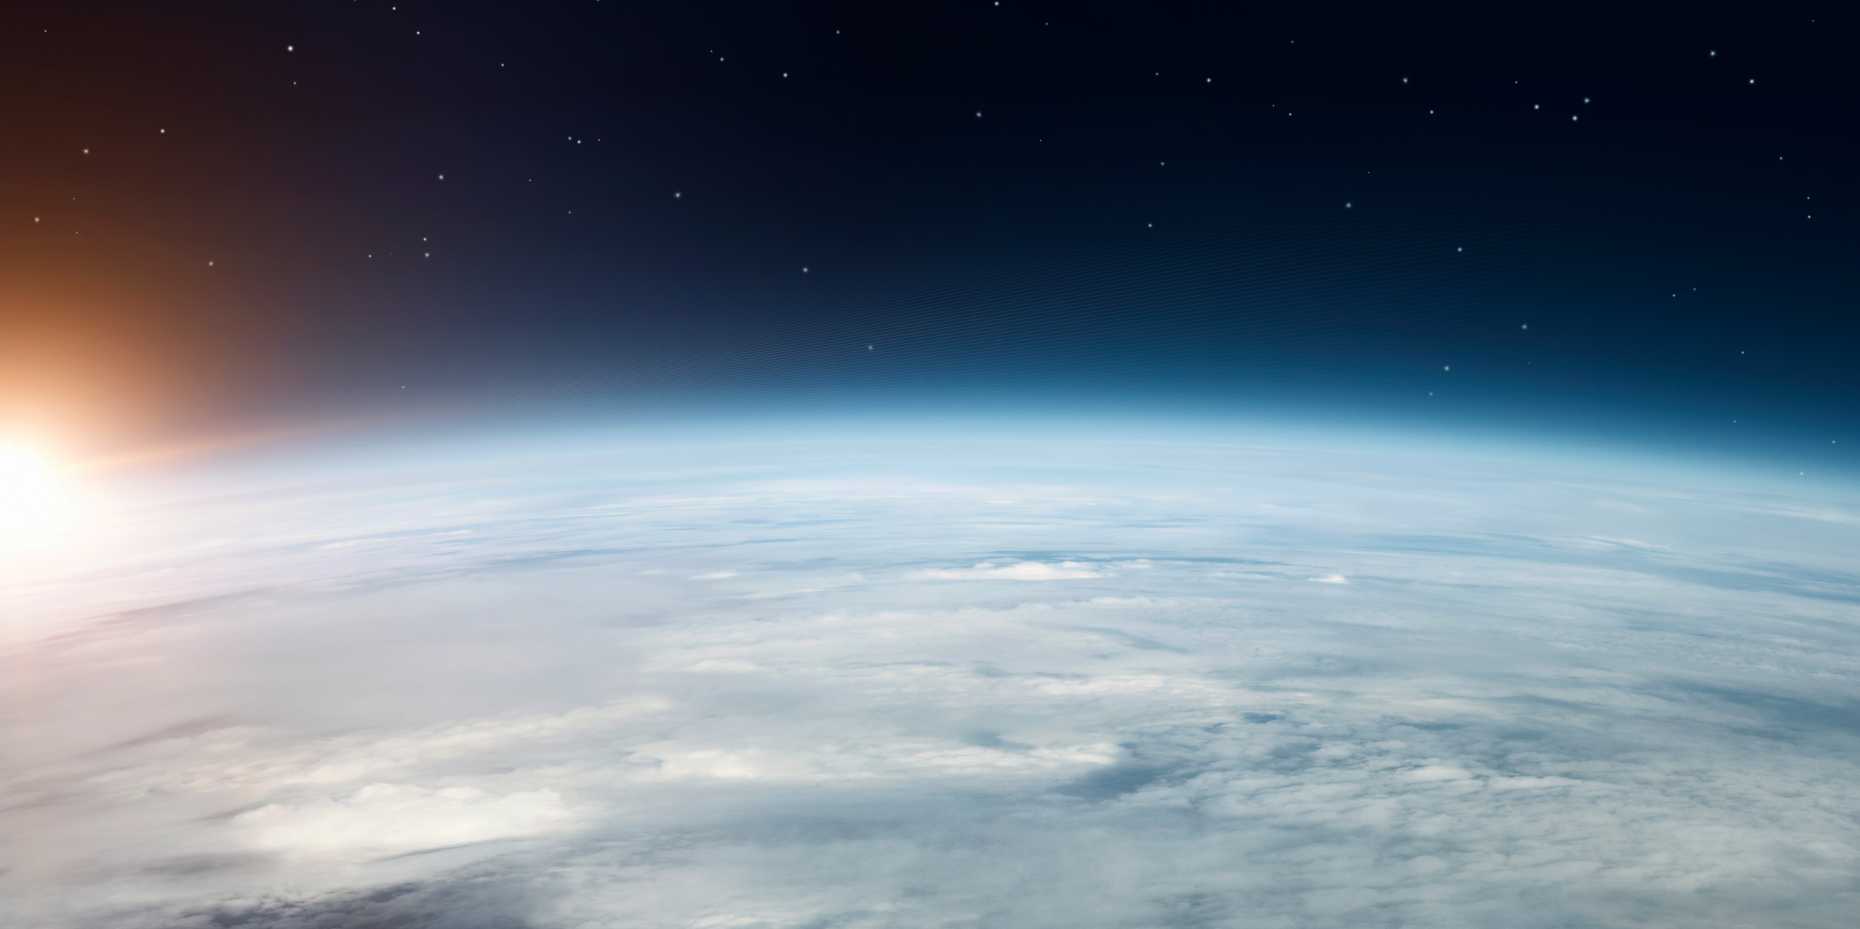 Vergrösserte Ansicht: Die stratosphärische Ozonschicht